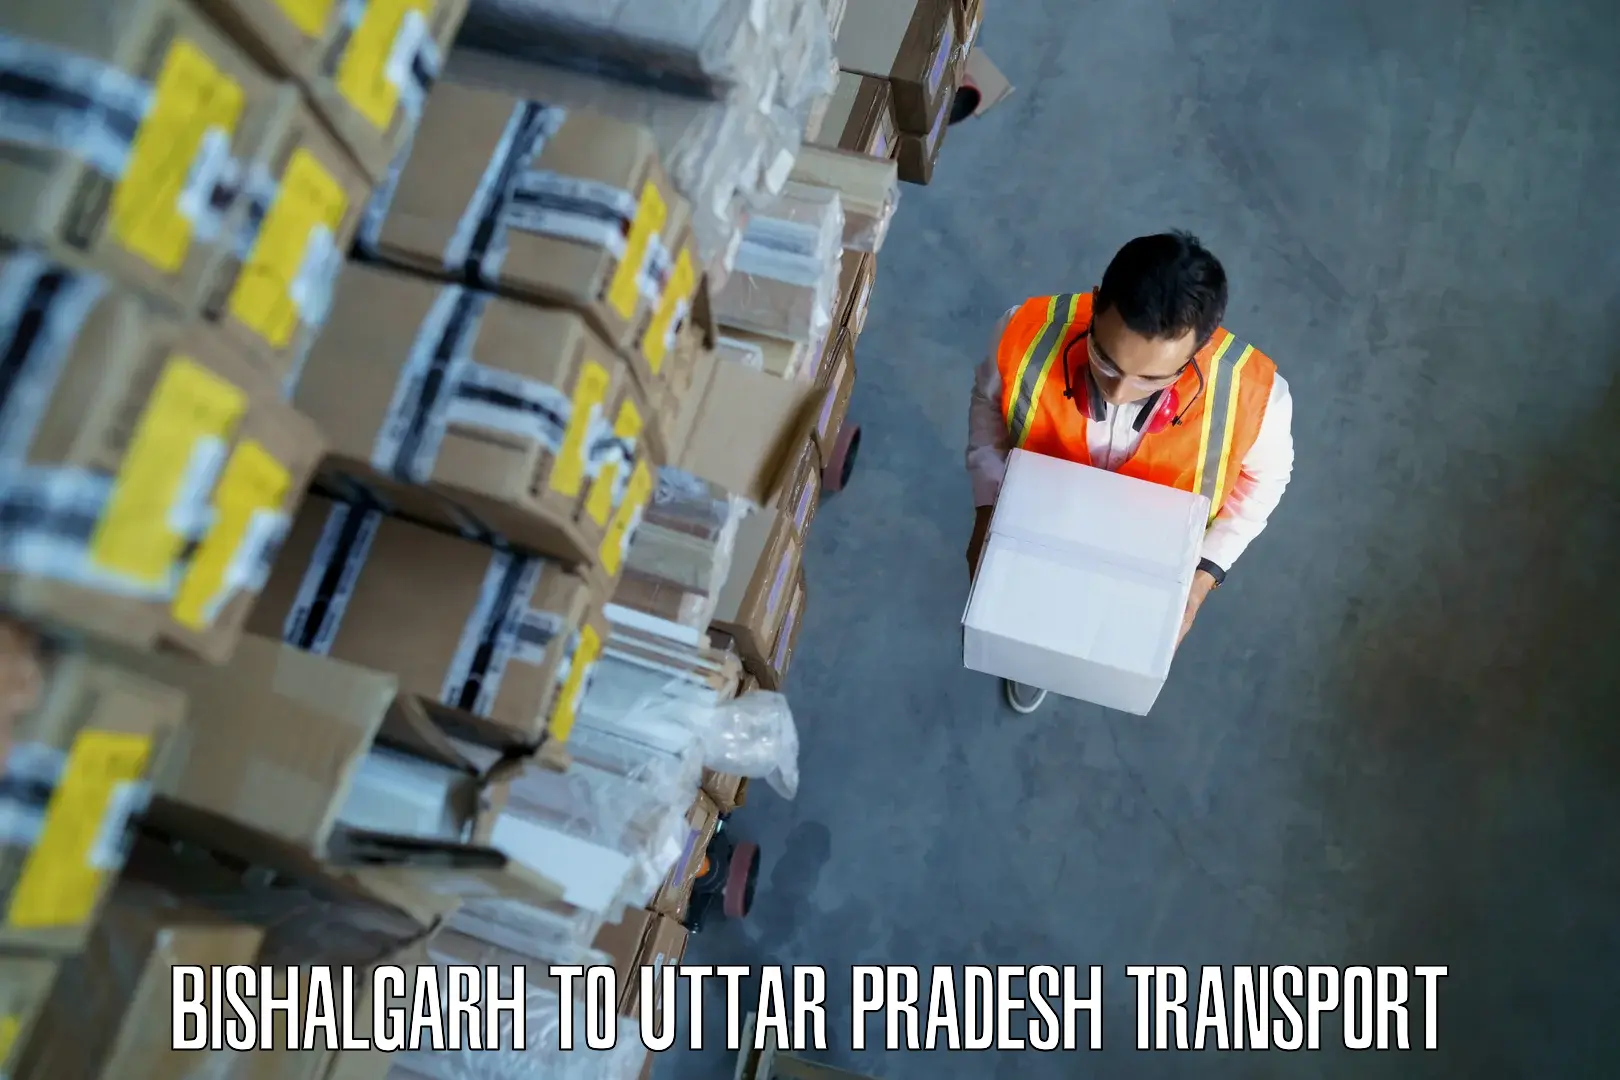 Cargo transport services Bishalgarh to Dataganj